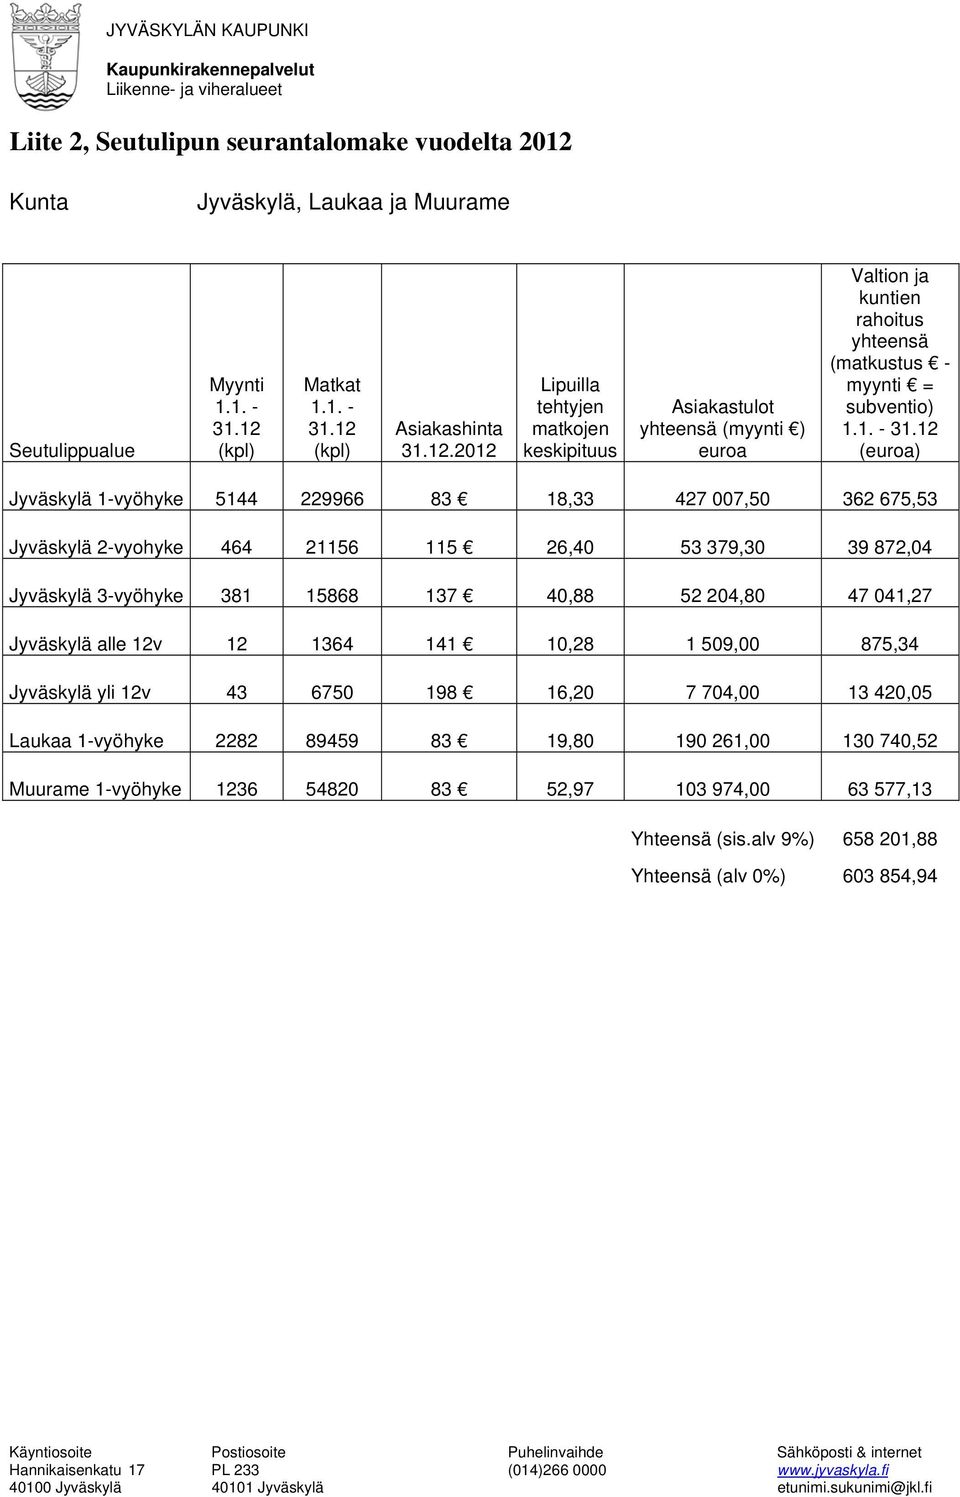 (kpl) Matkat 1.1. - 31.12 (kpl) Asiakashinta 31.12.2012 Lipuilla tehtyjen matkojen keskipituus Asiakastulot yhteensä (myynti ) euroa Valtion ja kuntien rahoitus yhteensä (matkustus - myynti = subventio) 1.